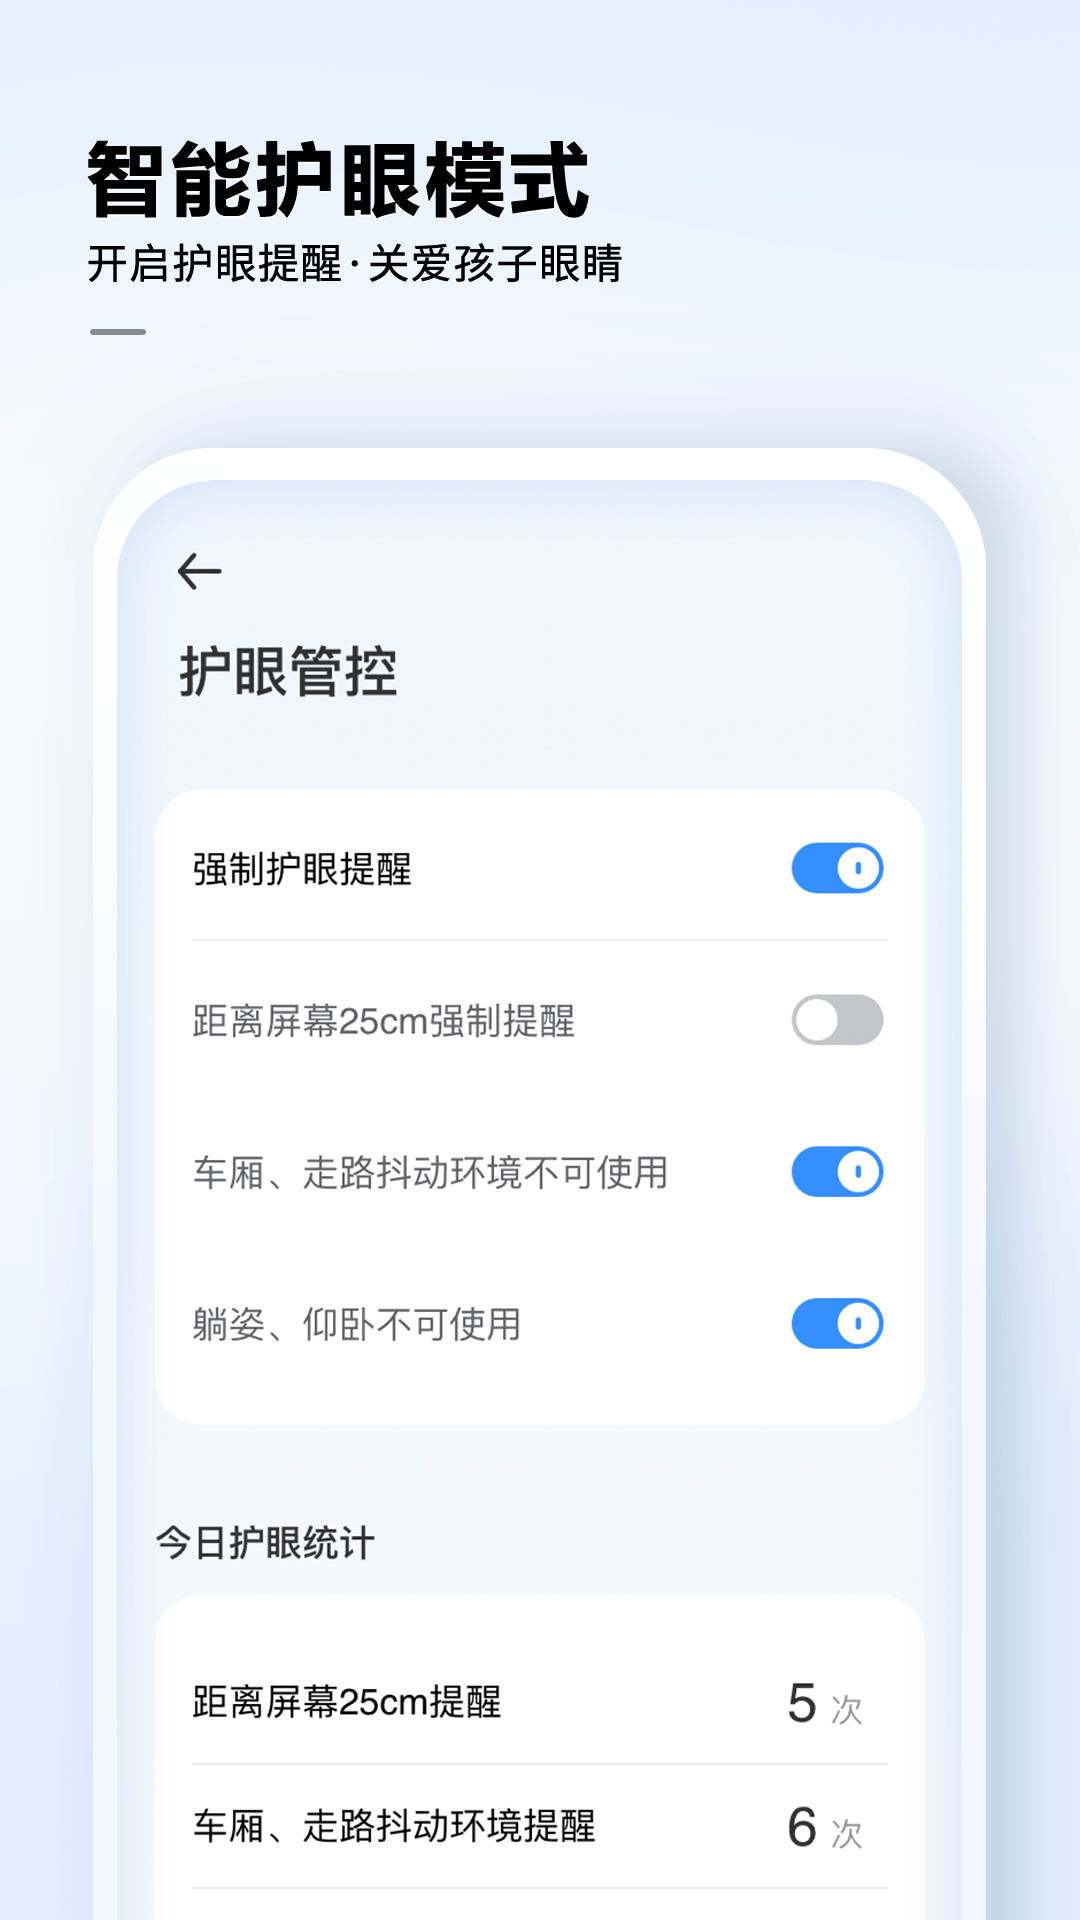 讯飞AI学安卓版手机软件下载-讯飞AI学无广告版app下载